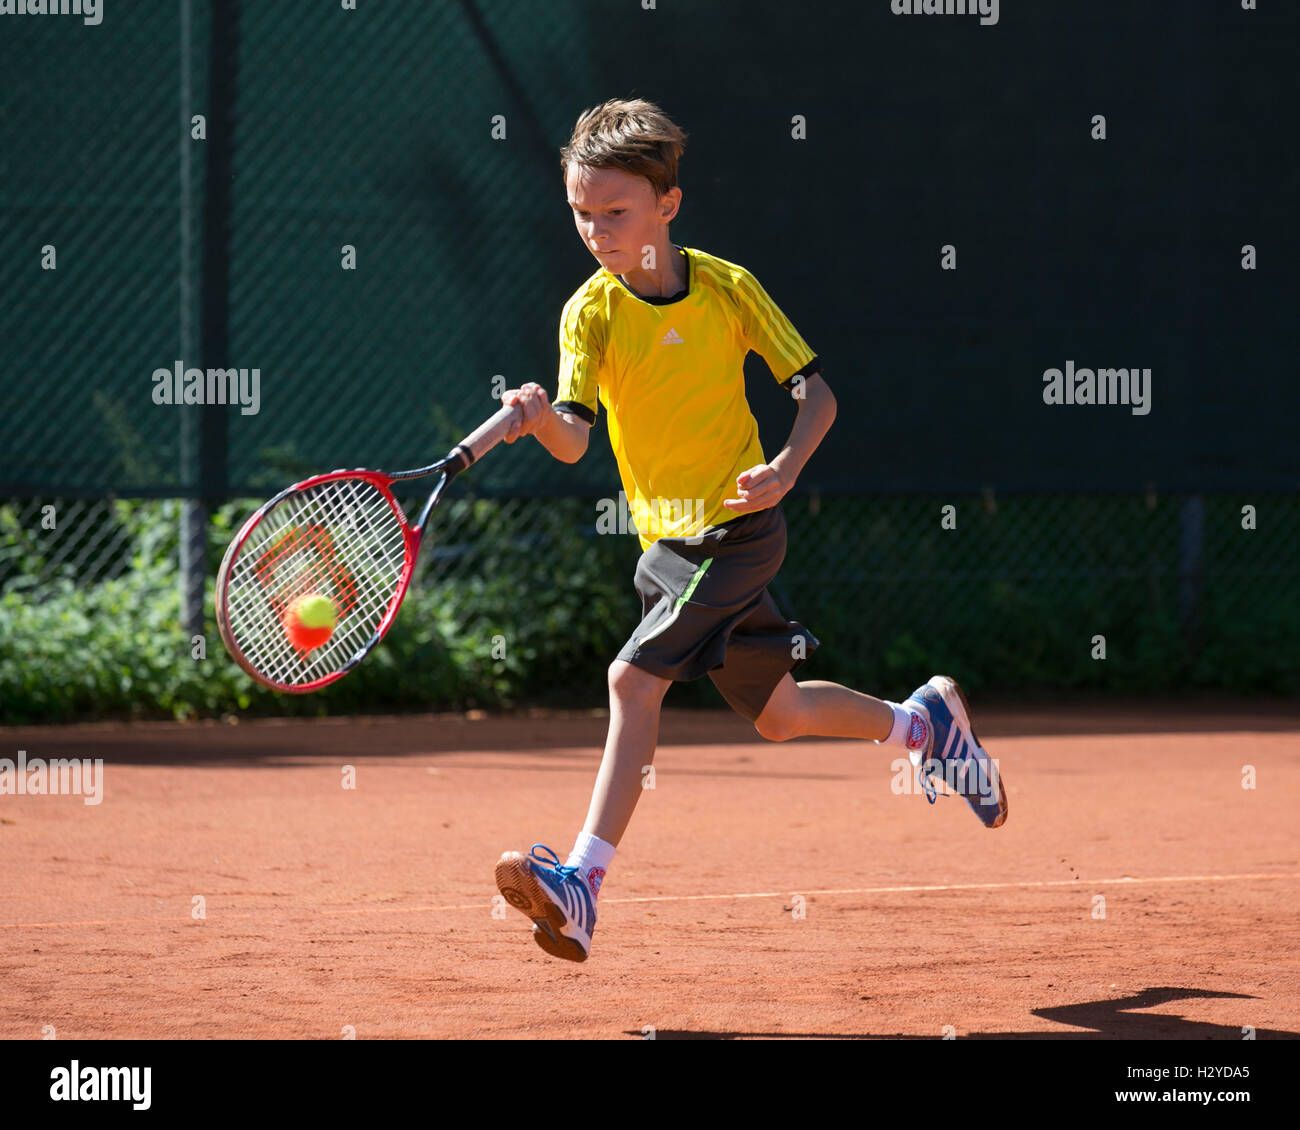 Tennis-Turnier für Kinder 9-12 Jahren Stockfotografie - Alamy